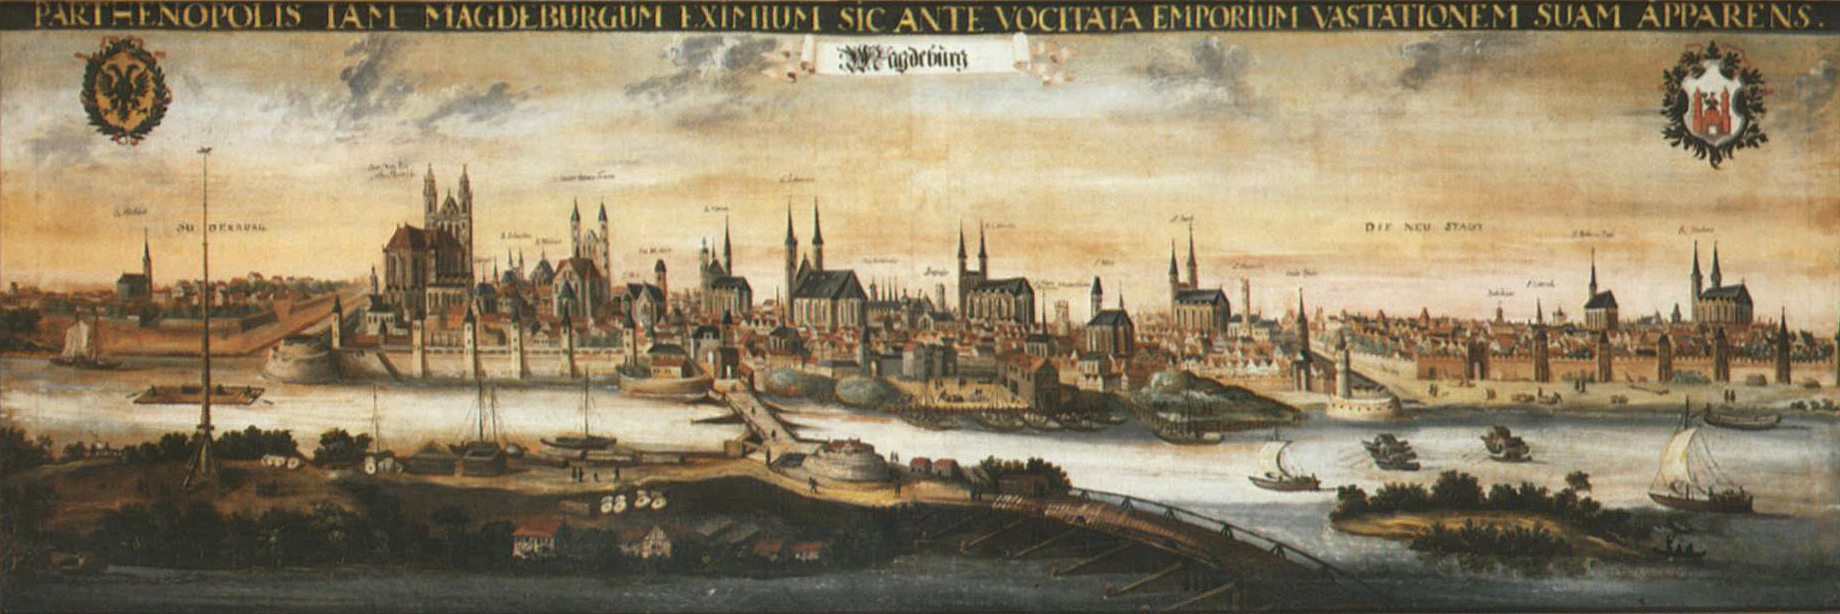 Magdeburg, circa 1600